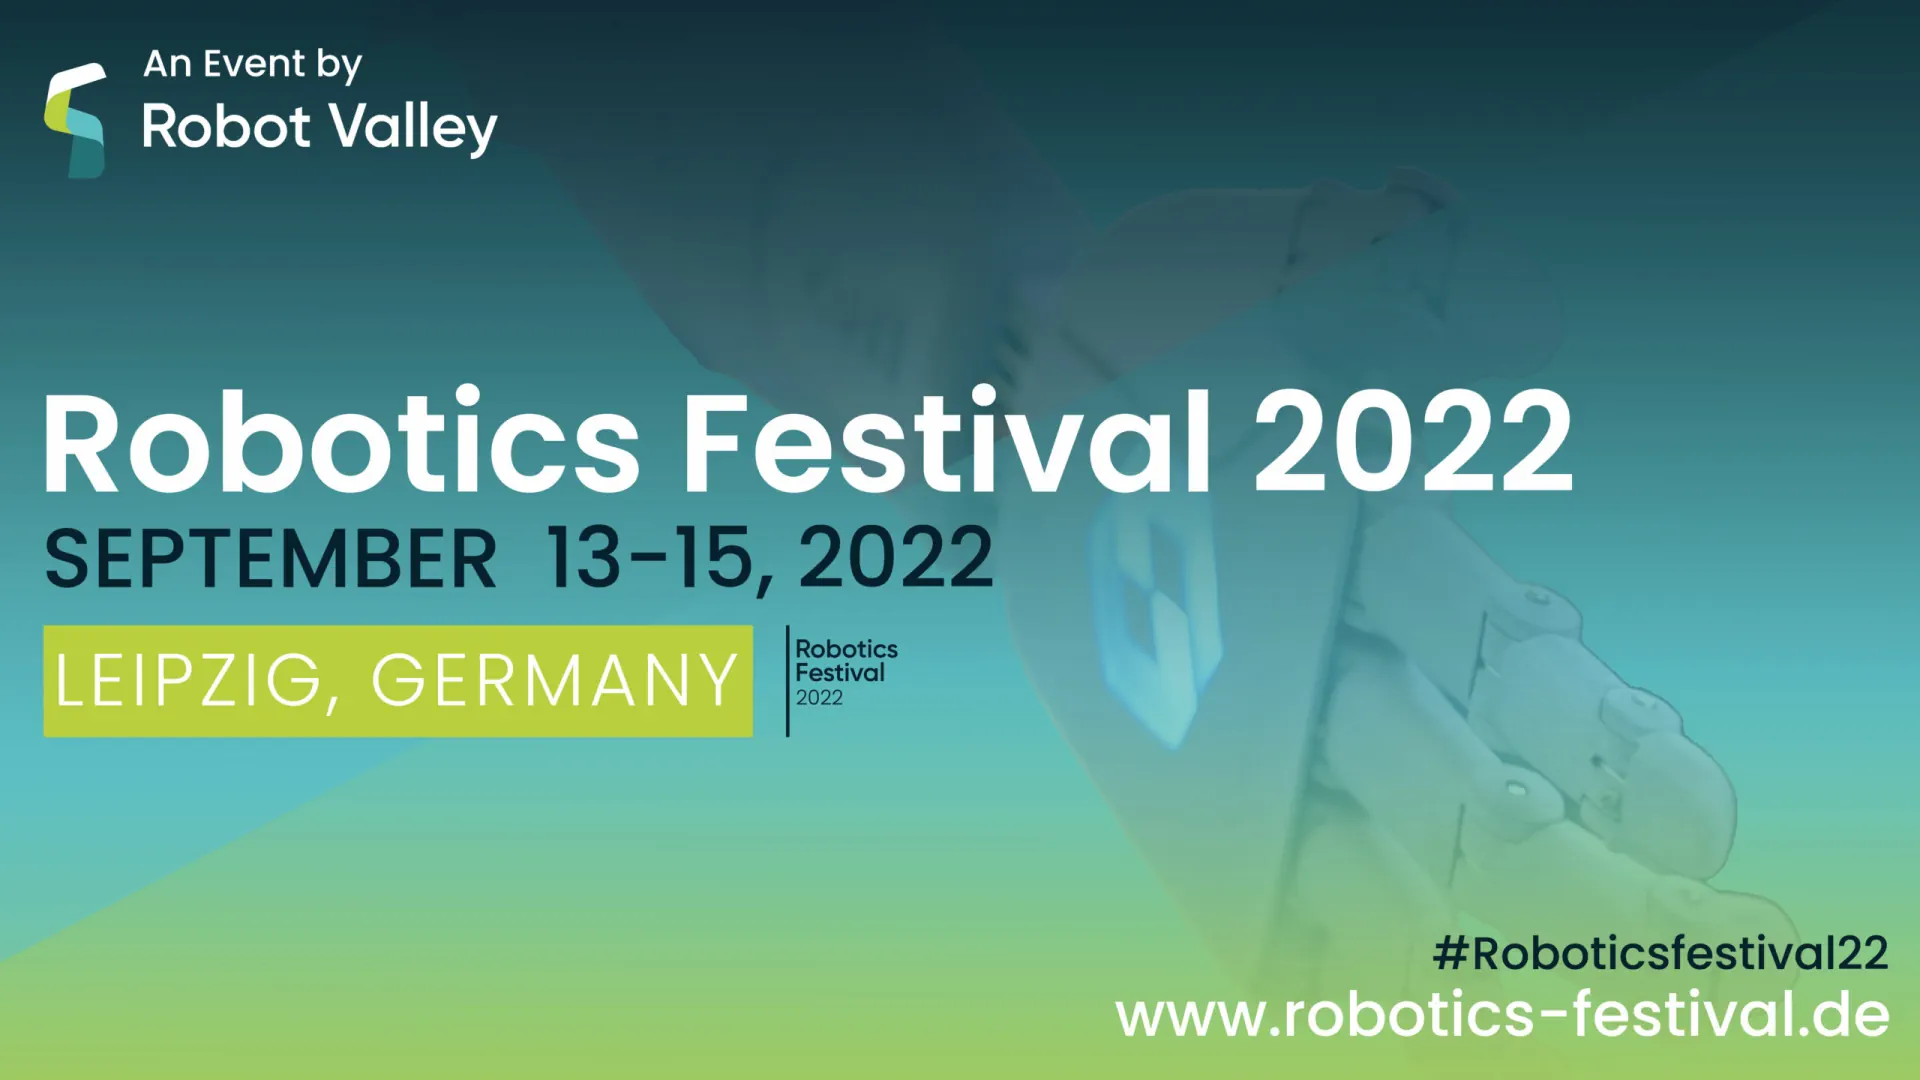 Robotics Festival 2022 with CampusGenius